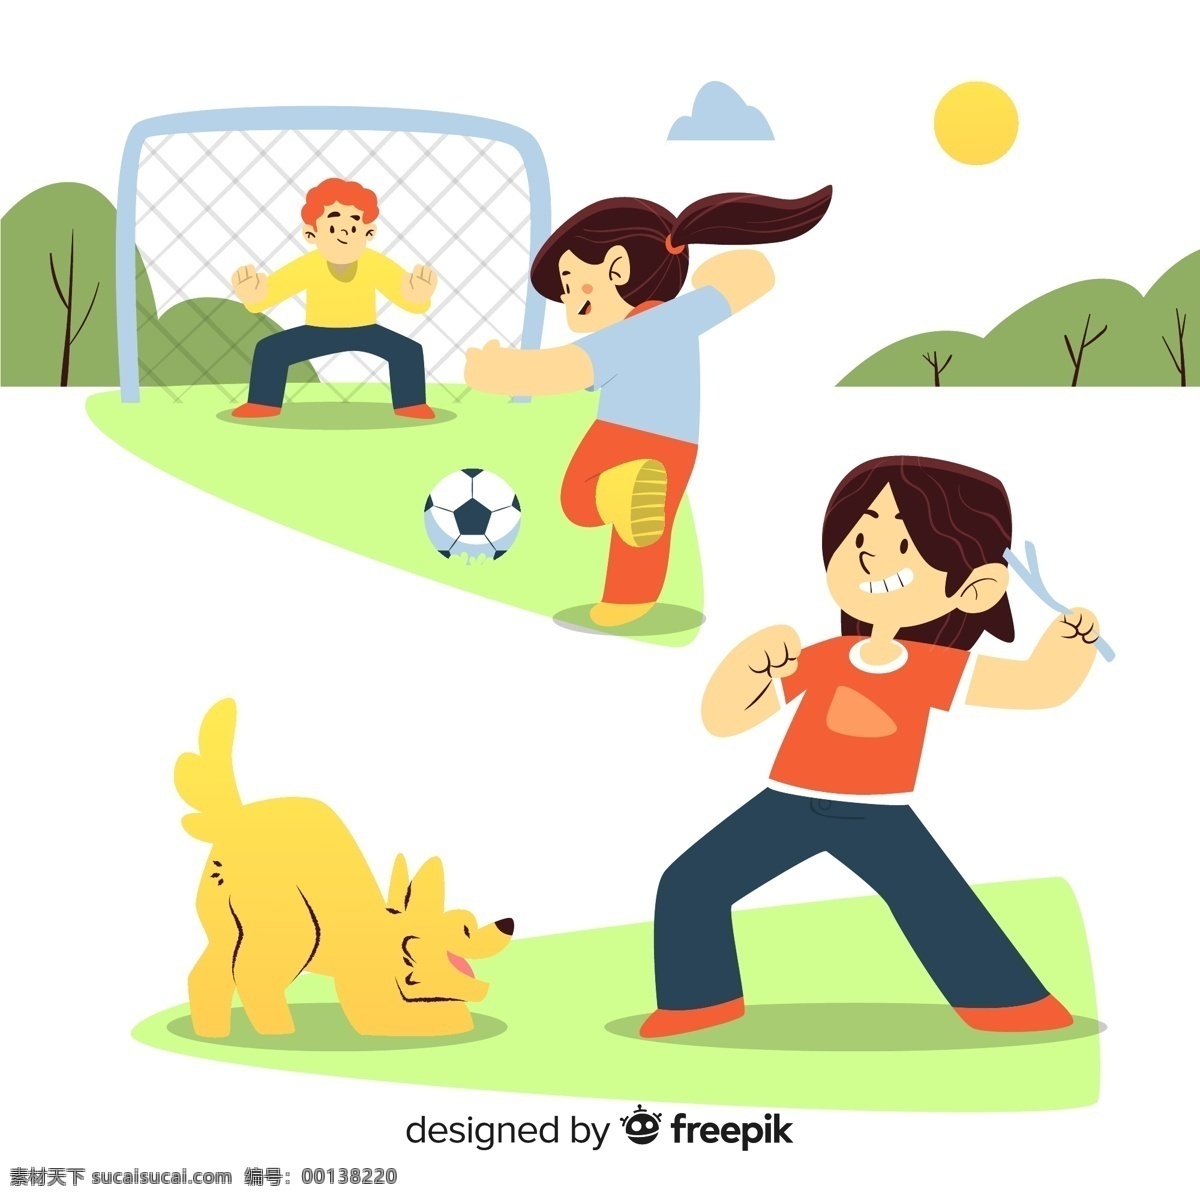 创意户外玩耍 创意 户外 玩耍 儿童 足球 足球网 狗 树木 草地 人物 生活百科 休闲娱乐